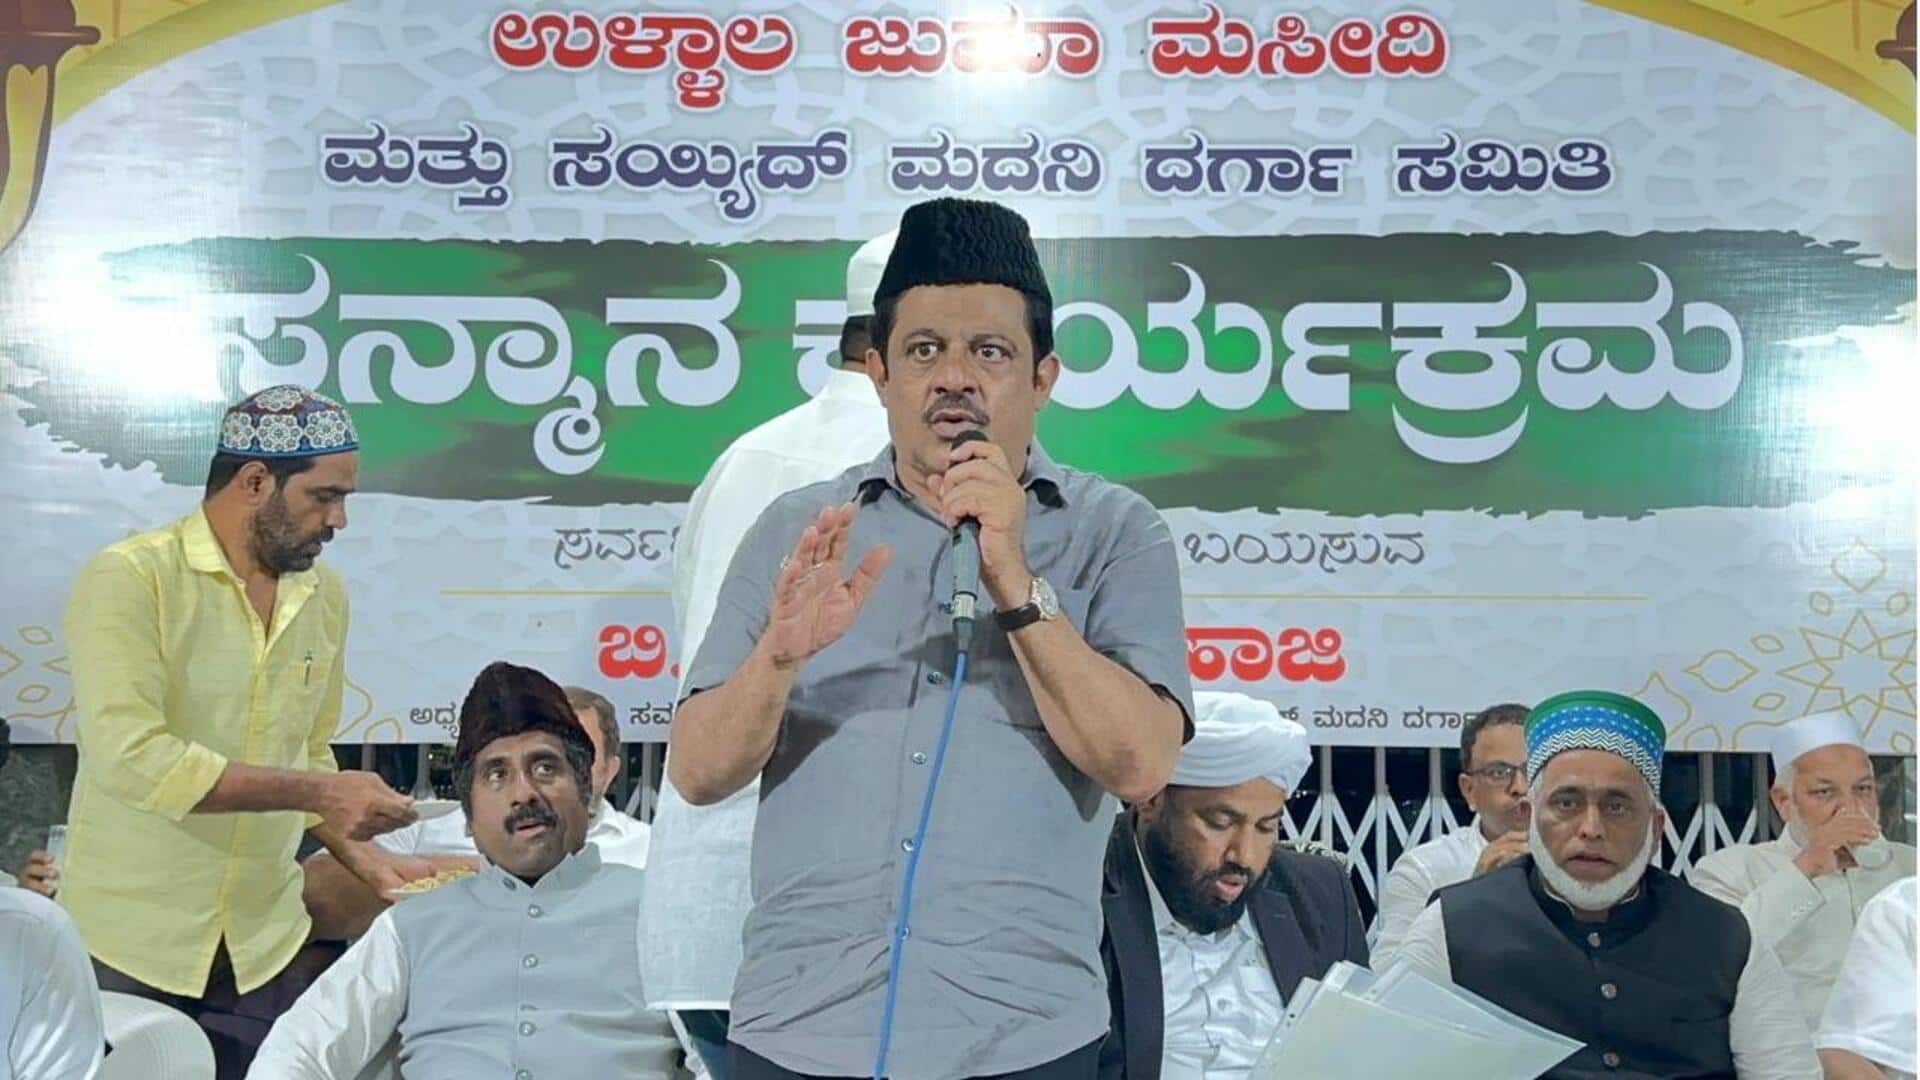 BJP must greet Karnataka Muslim speaker 'namaskaar sir': Congress leader 